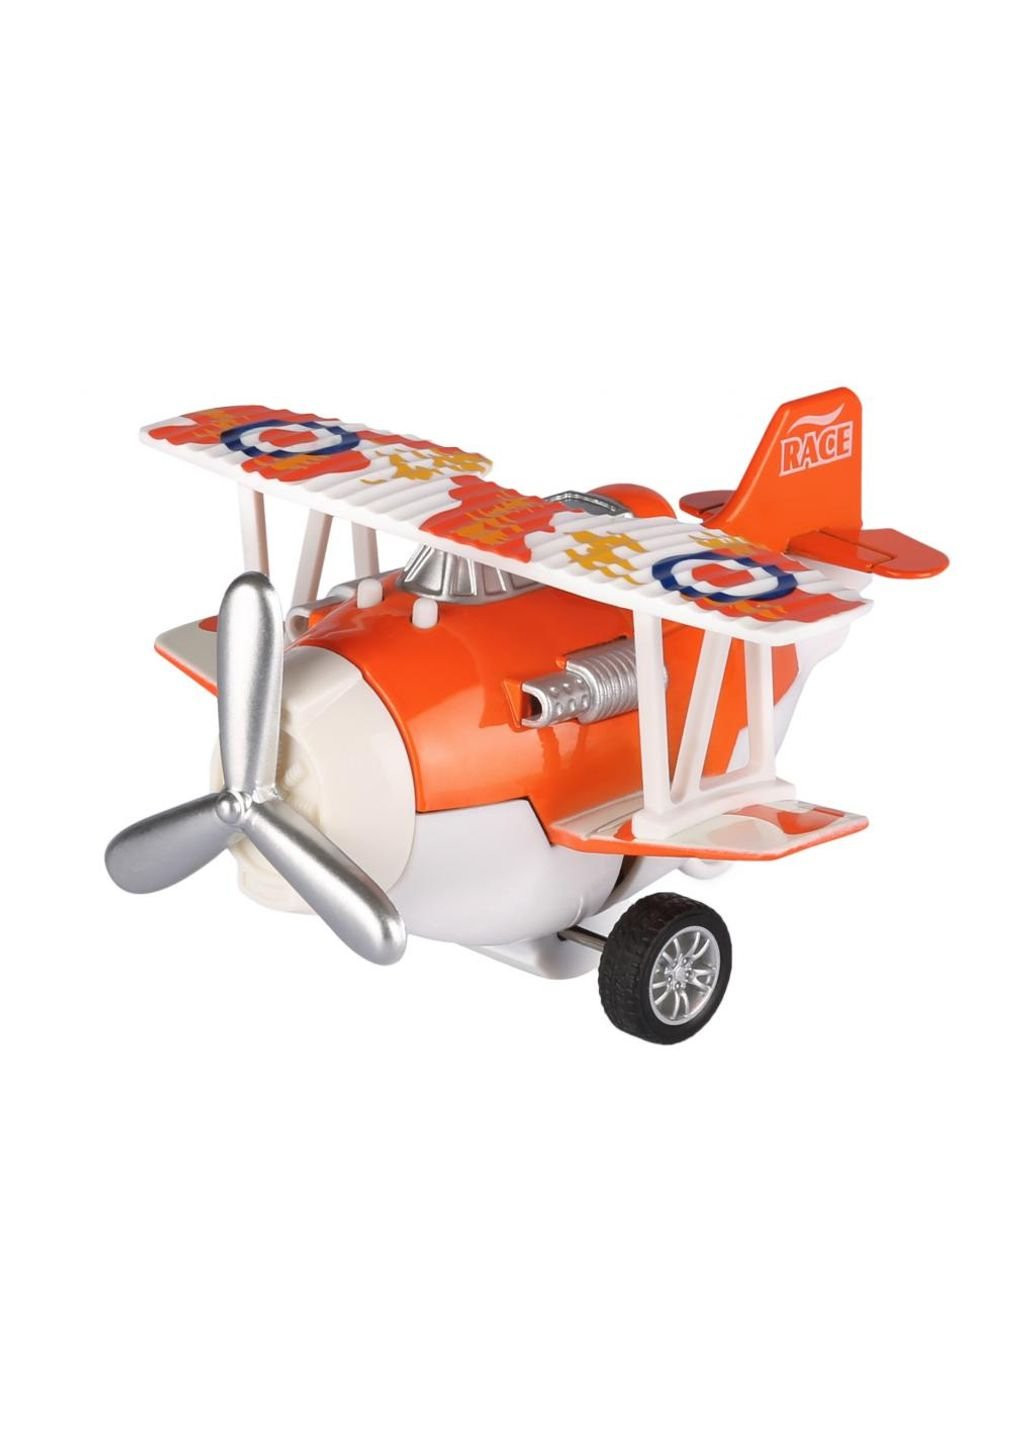 Спецтехника Самолет металический инерционный Aircraft оранжевый (SY8013AUt-1) Same Toy (254083015)